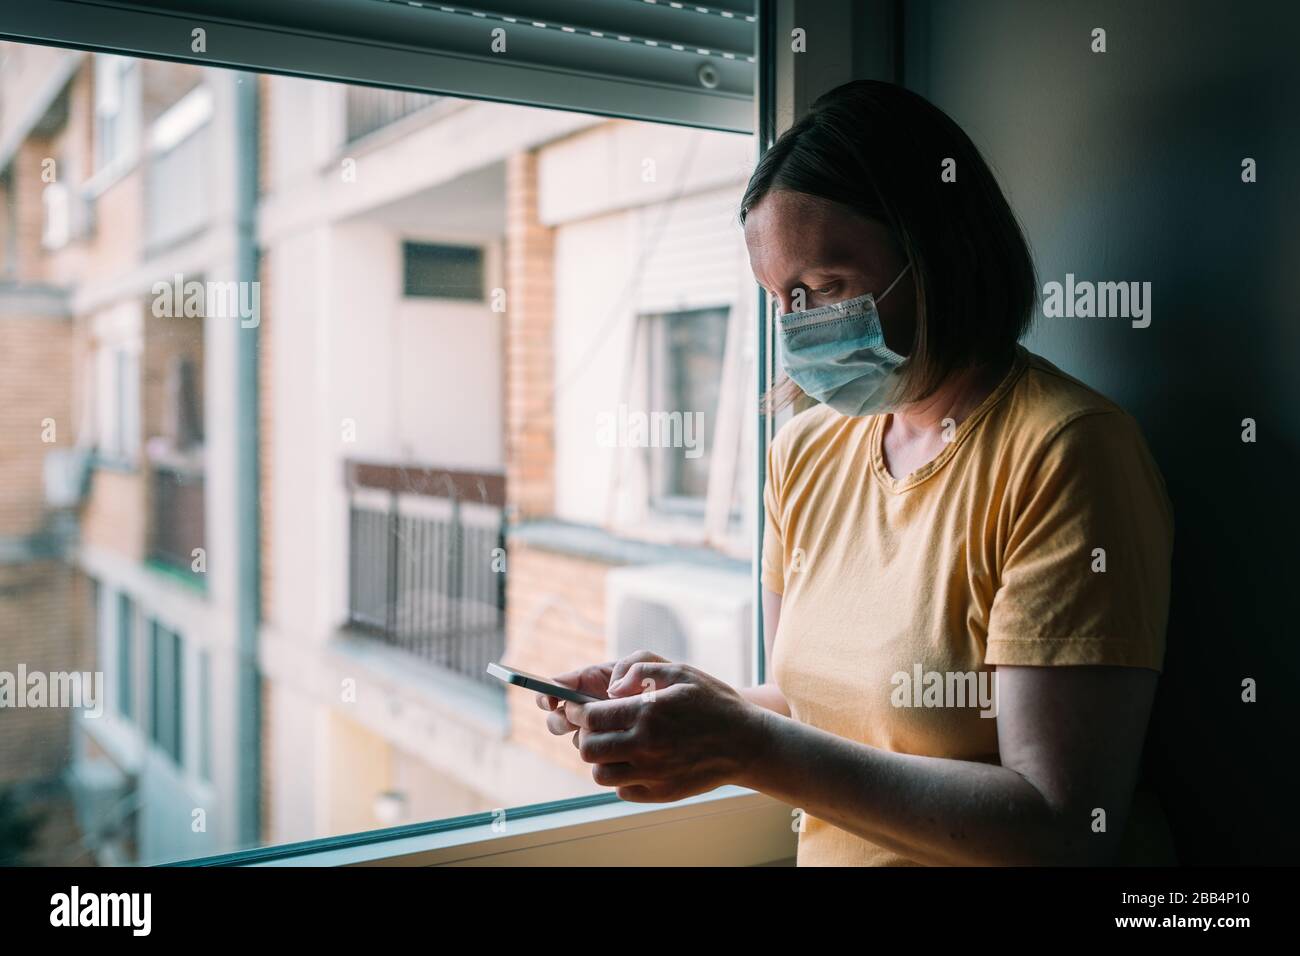 Frau in Selbstisolation bei Virusausbruch mit Handy. Besorgte weibliche Person mit chirurgischer Schutzmaske, Smartphone halten, selektiv f. Stockfoto